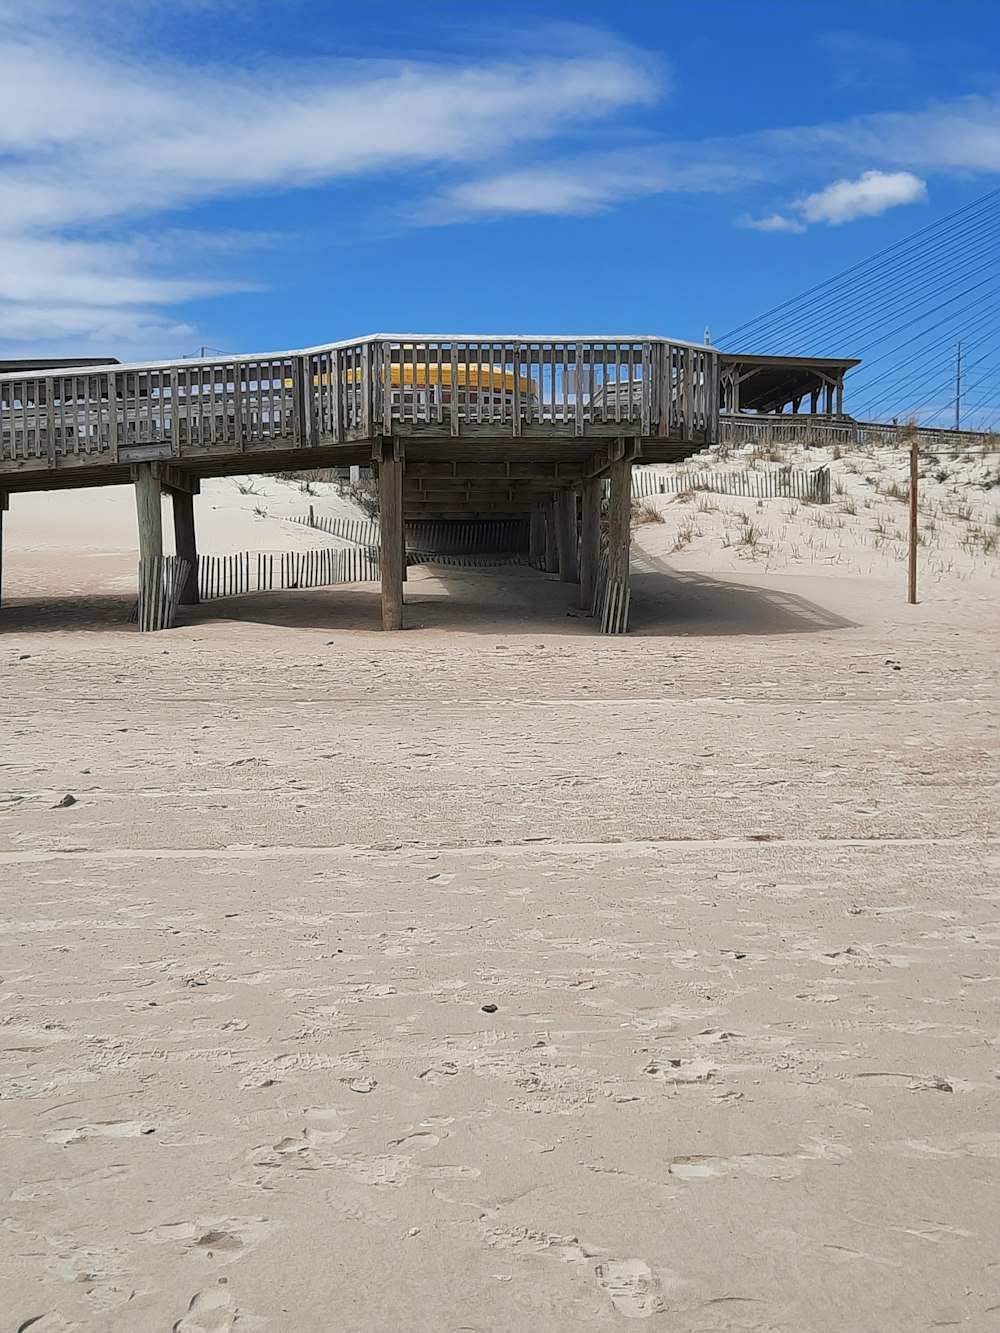 a wooden bridge over a sandy beach under a blue sky